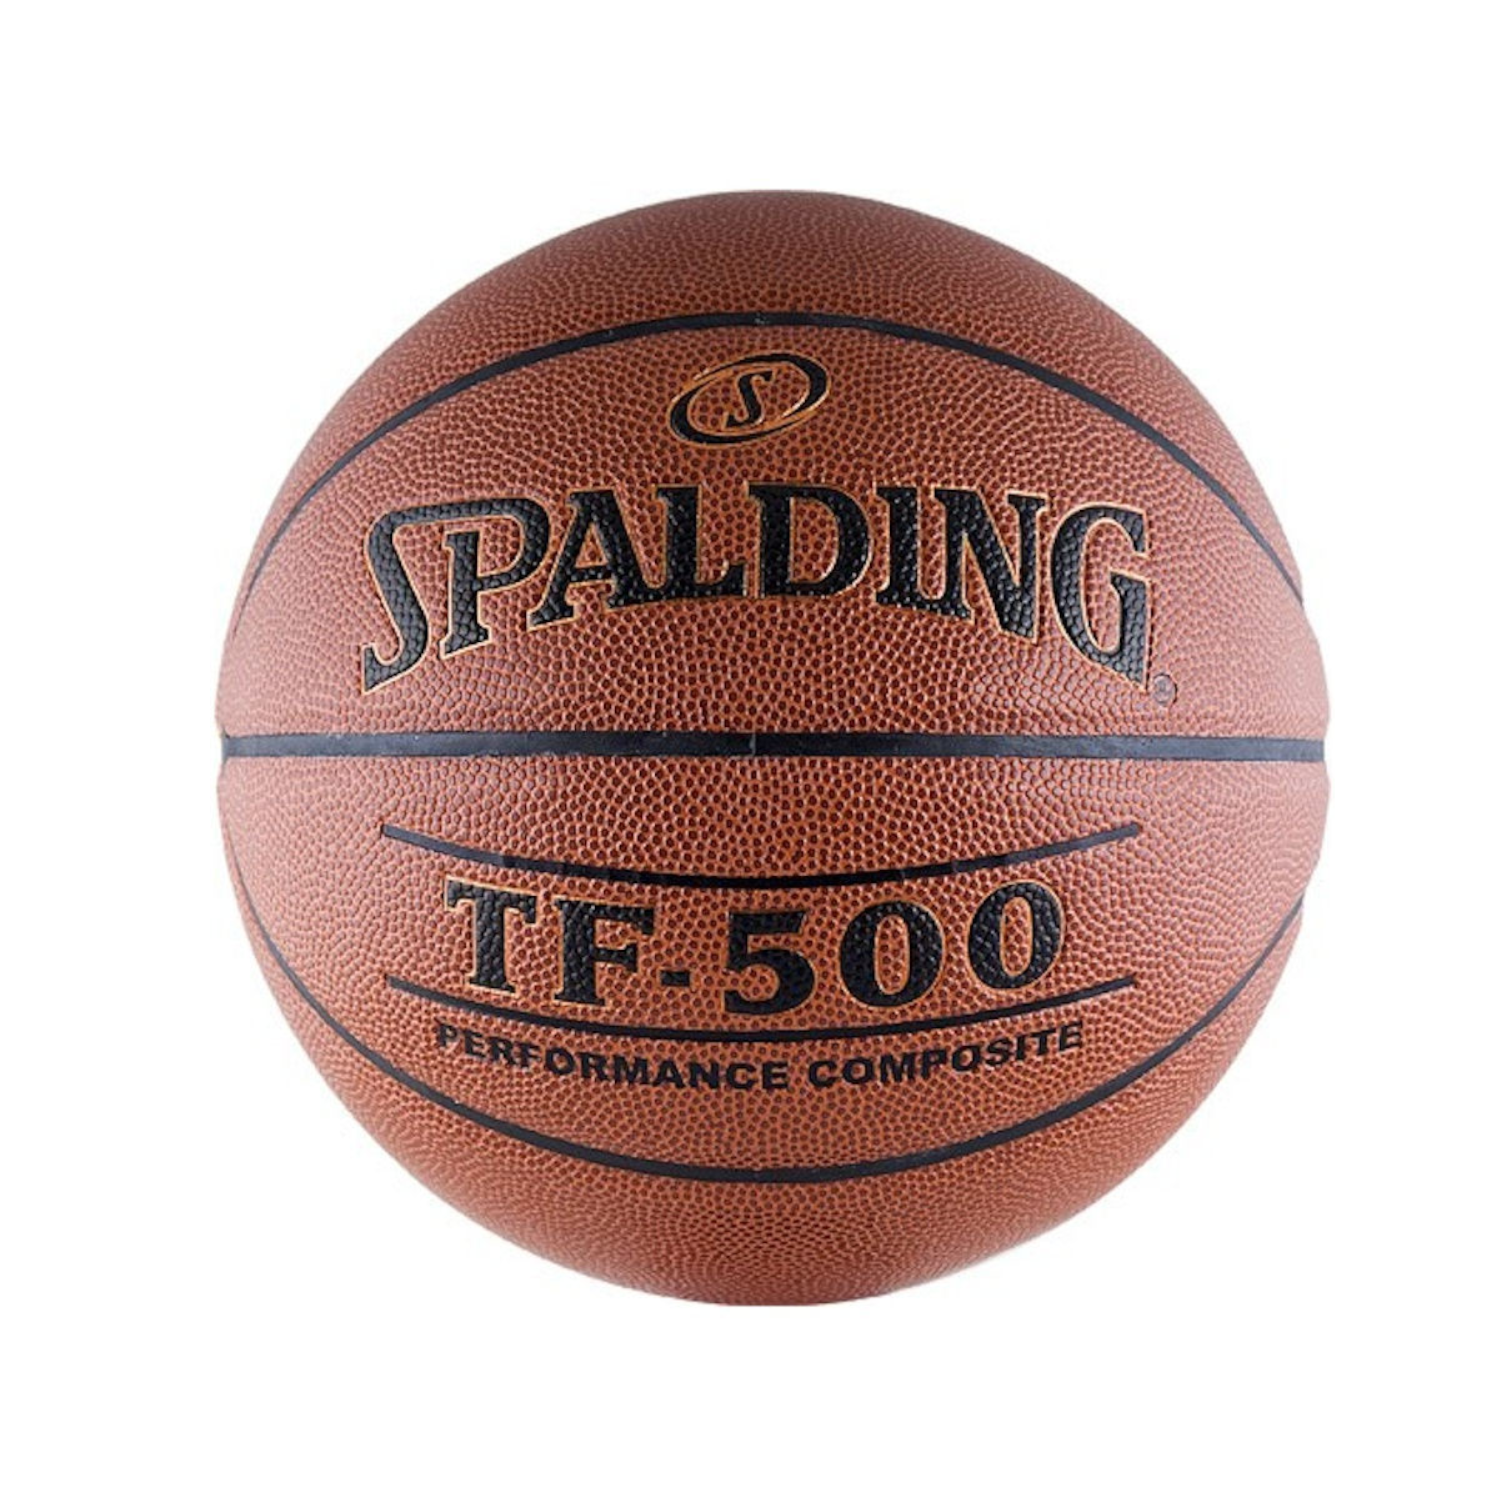 Баскетбольный мяч SPALDING TF-500 Performance размер: 7 - фото 1